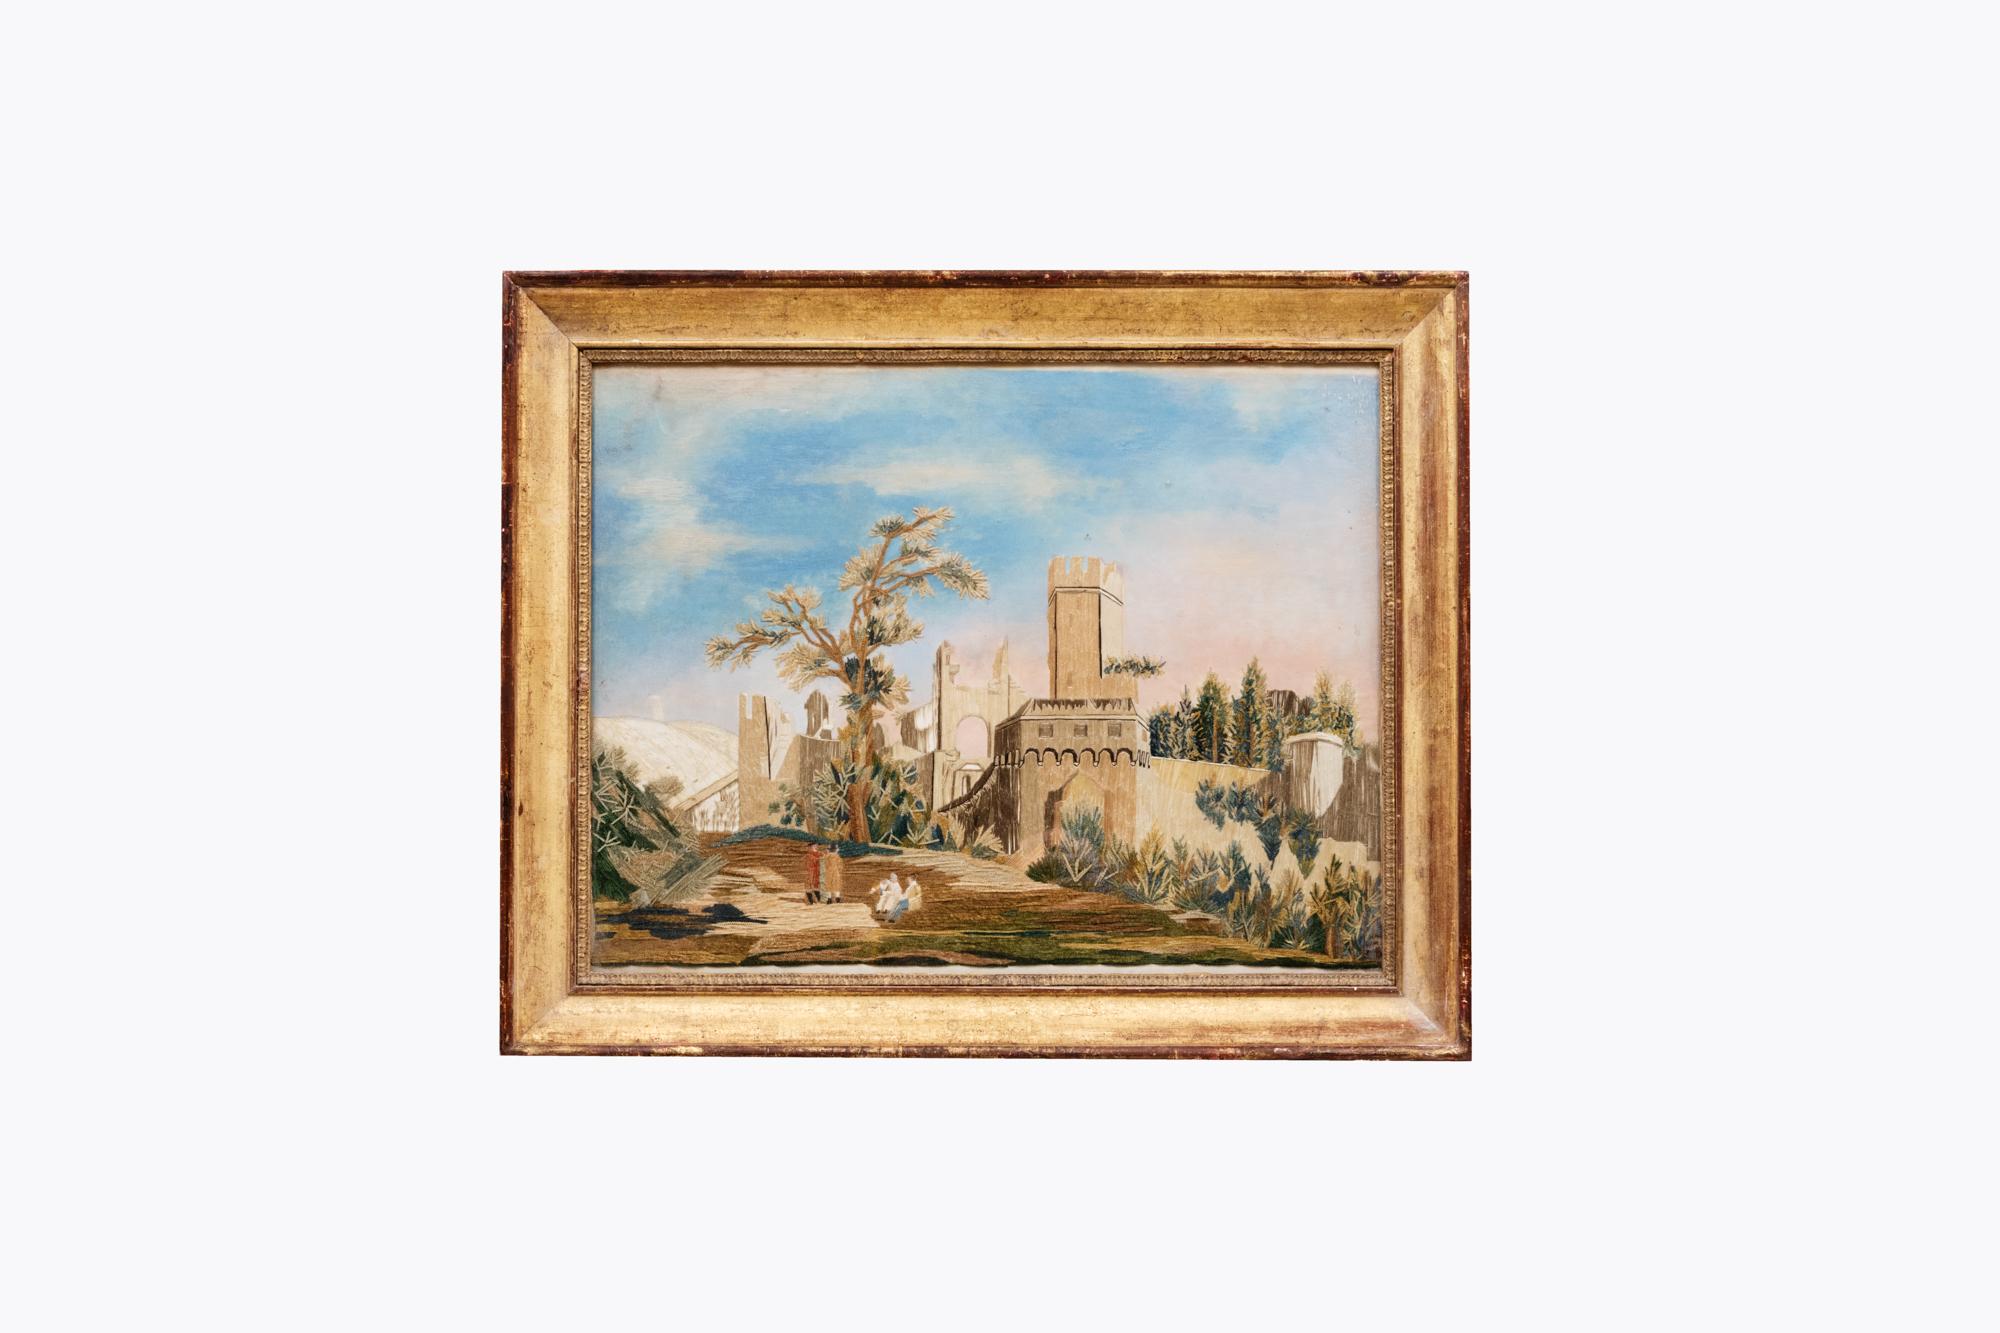 Französisches Capriccio aus dem 19. Jahrhundert mit einer Schlossszene in einer ländlichen Landschaft mit Figuren im Vordergrund. Dieses Stück ist in einem vergoldeten Rahmen untergebracht.

Der Begriff Capriccio bezieht sich auf landschaftliche